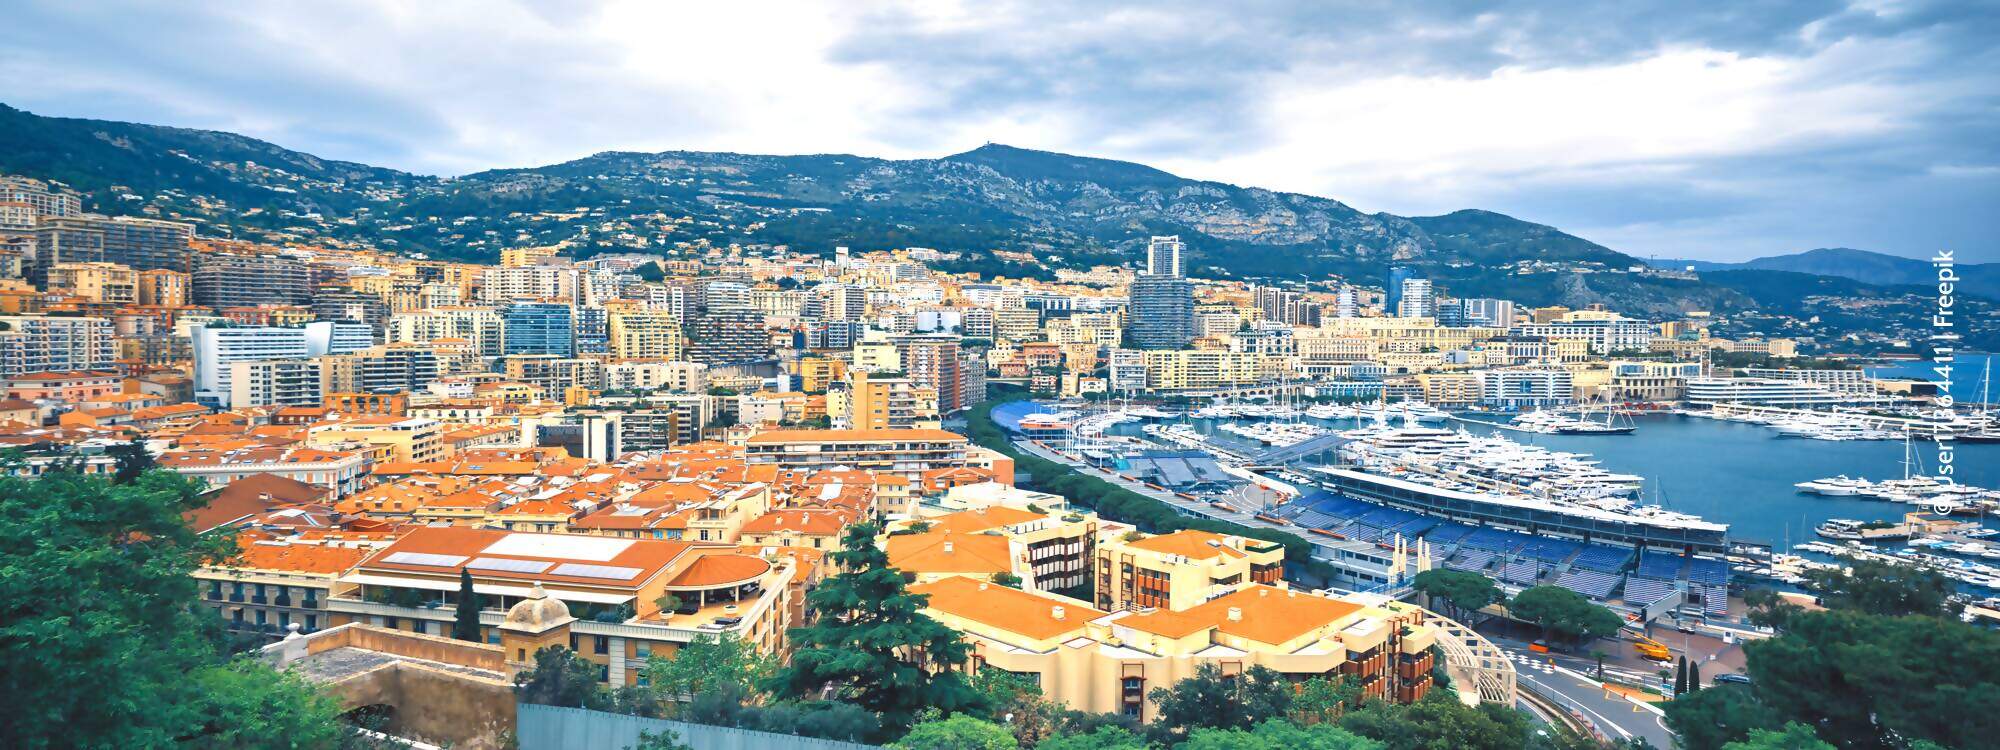 Der Blick auf Monte Carlo mit seiner Formel 1 Rennstrecke in Monaco